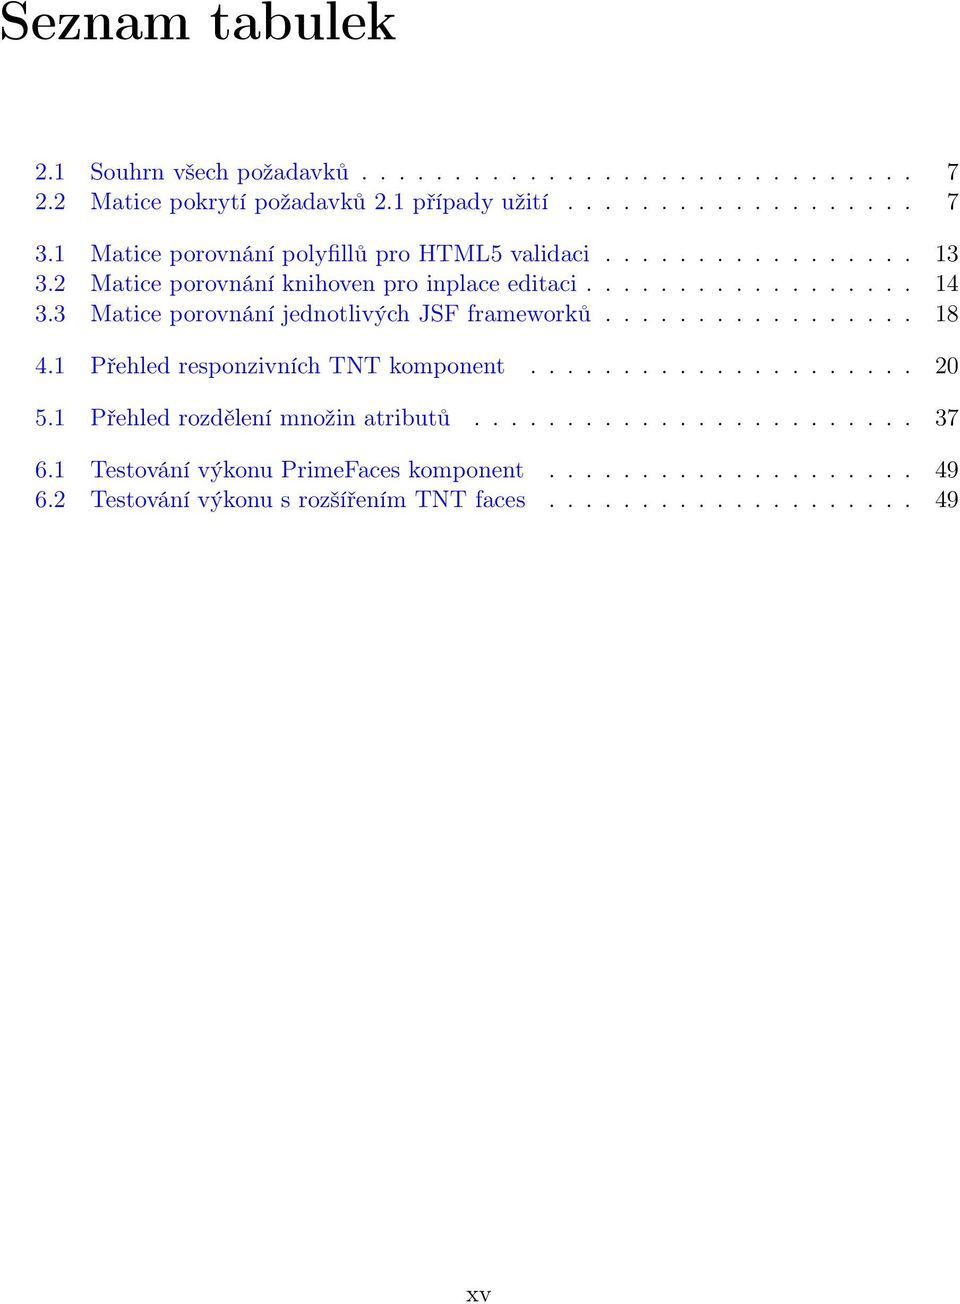 3 Matice porovnání jednotlivých JSF frameworků................. 18 4.1 Přehled responzivních TNT komponent..................... 20 5.